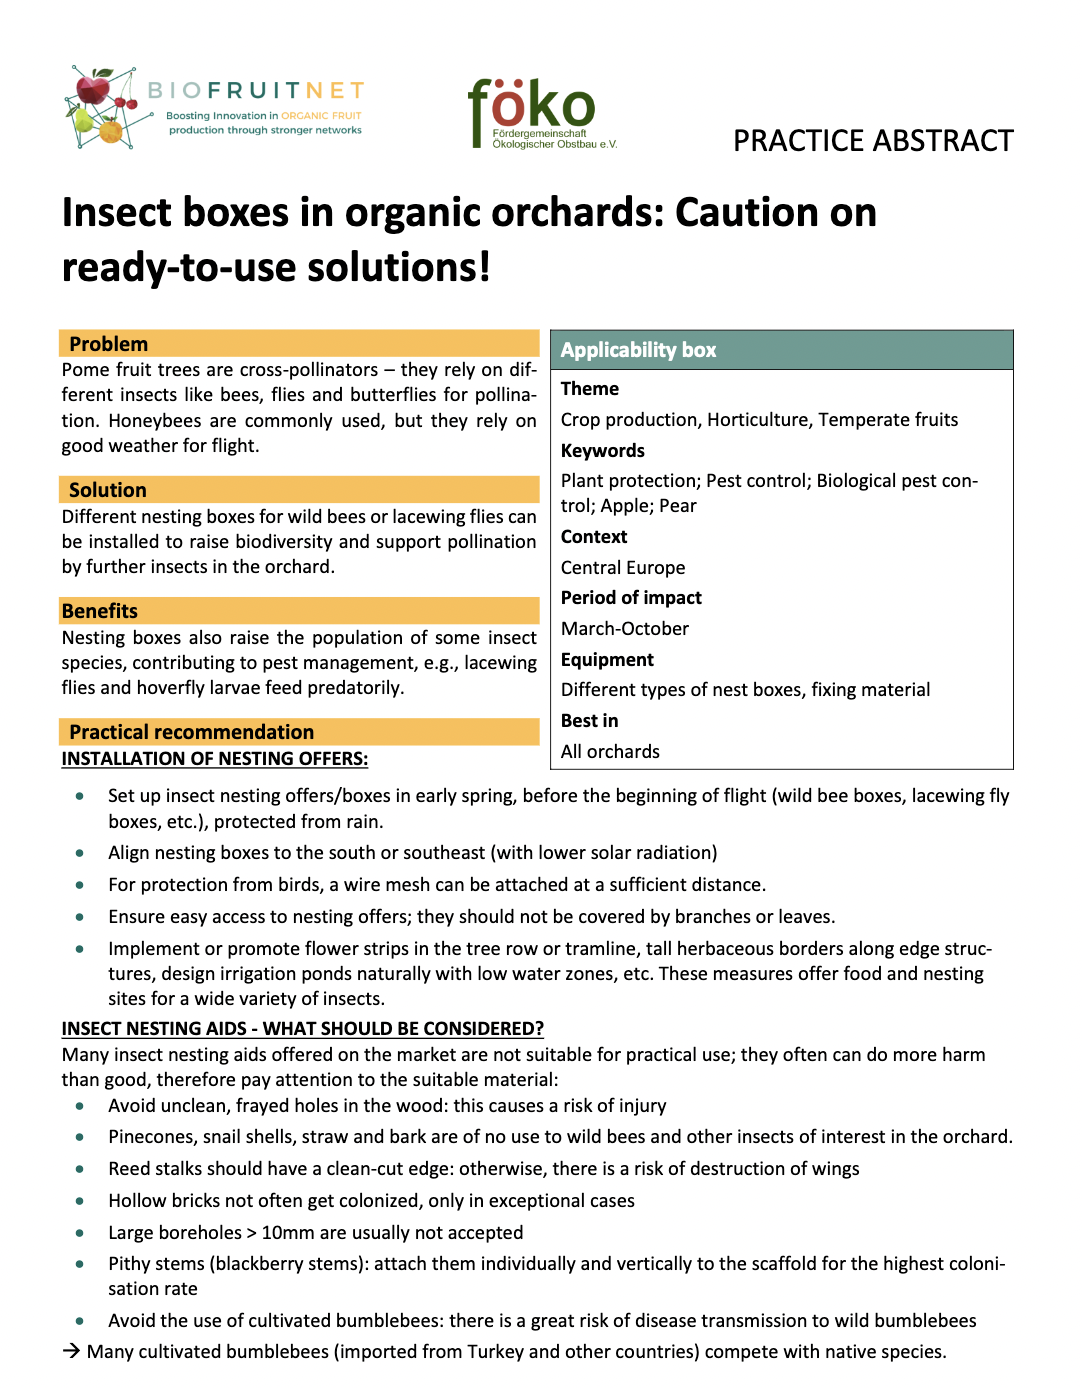 Insektkasser i økologiske frugtplantager: Forsigtig med brugsklare løsninger! (BIOFRUITNET Practice Abstract)